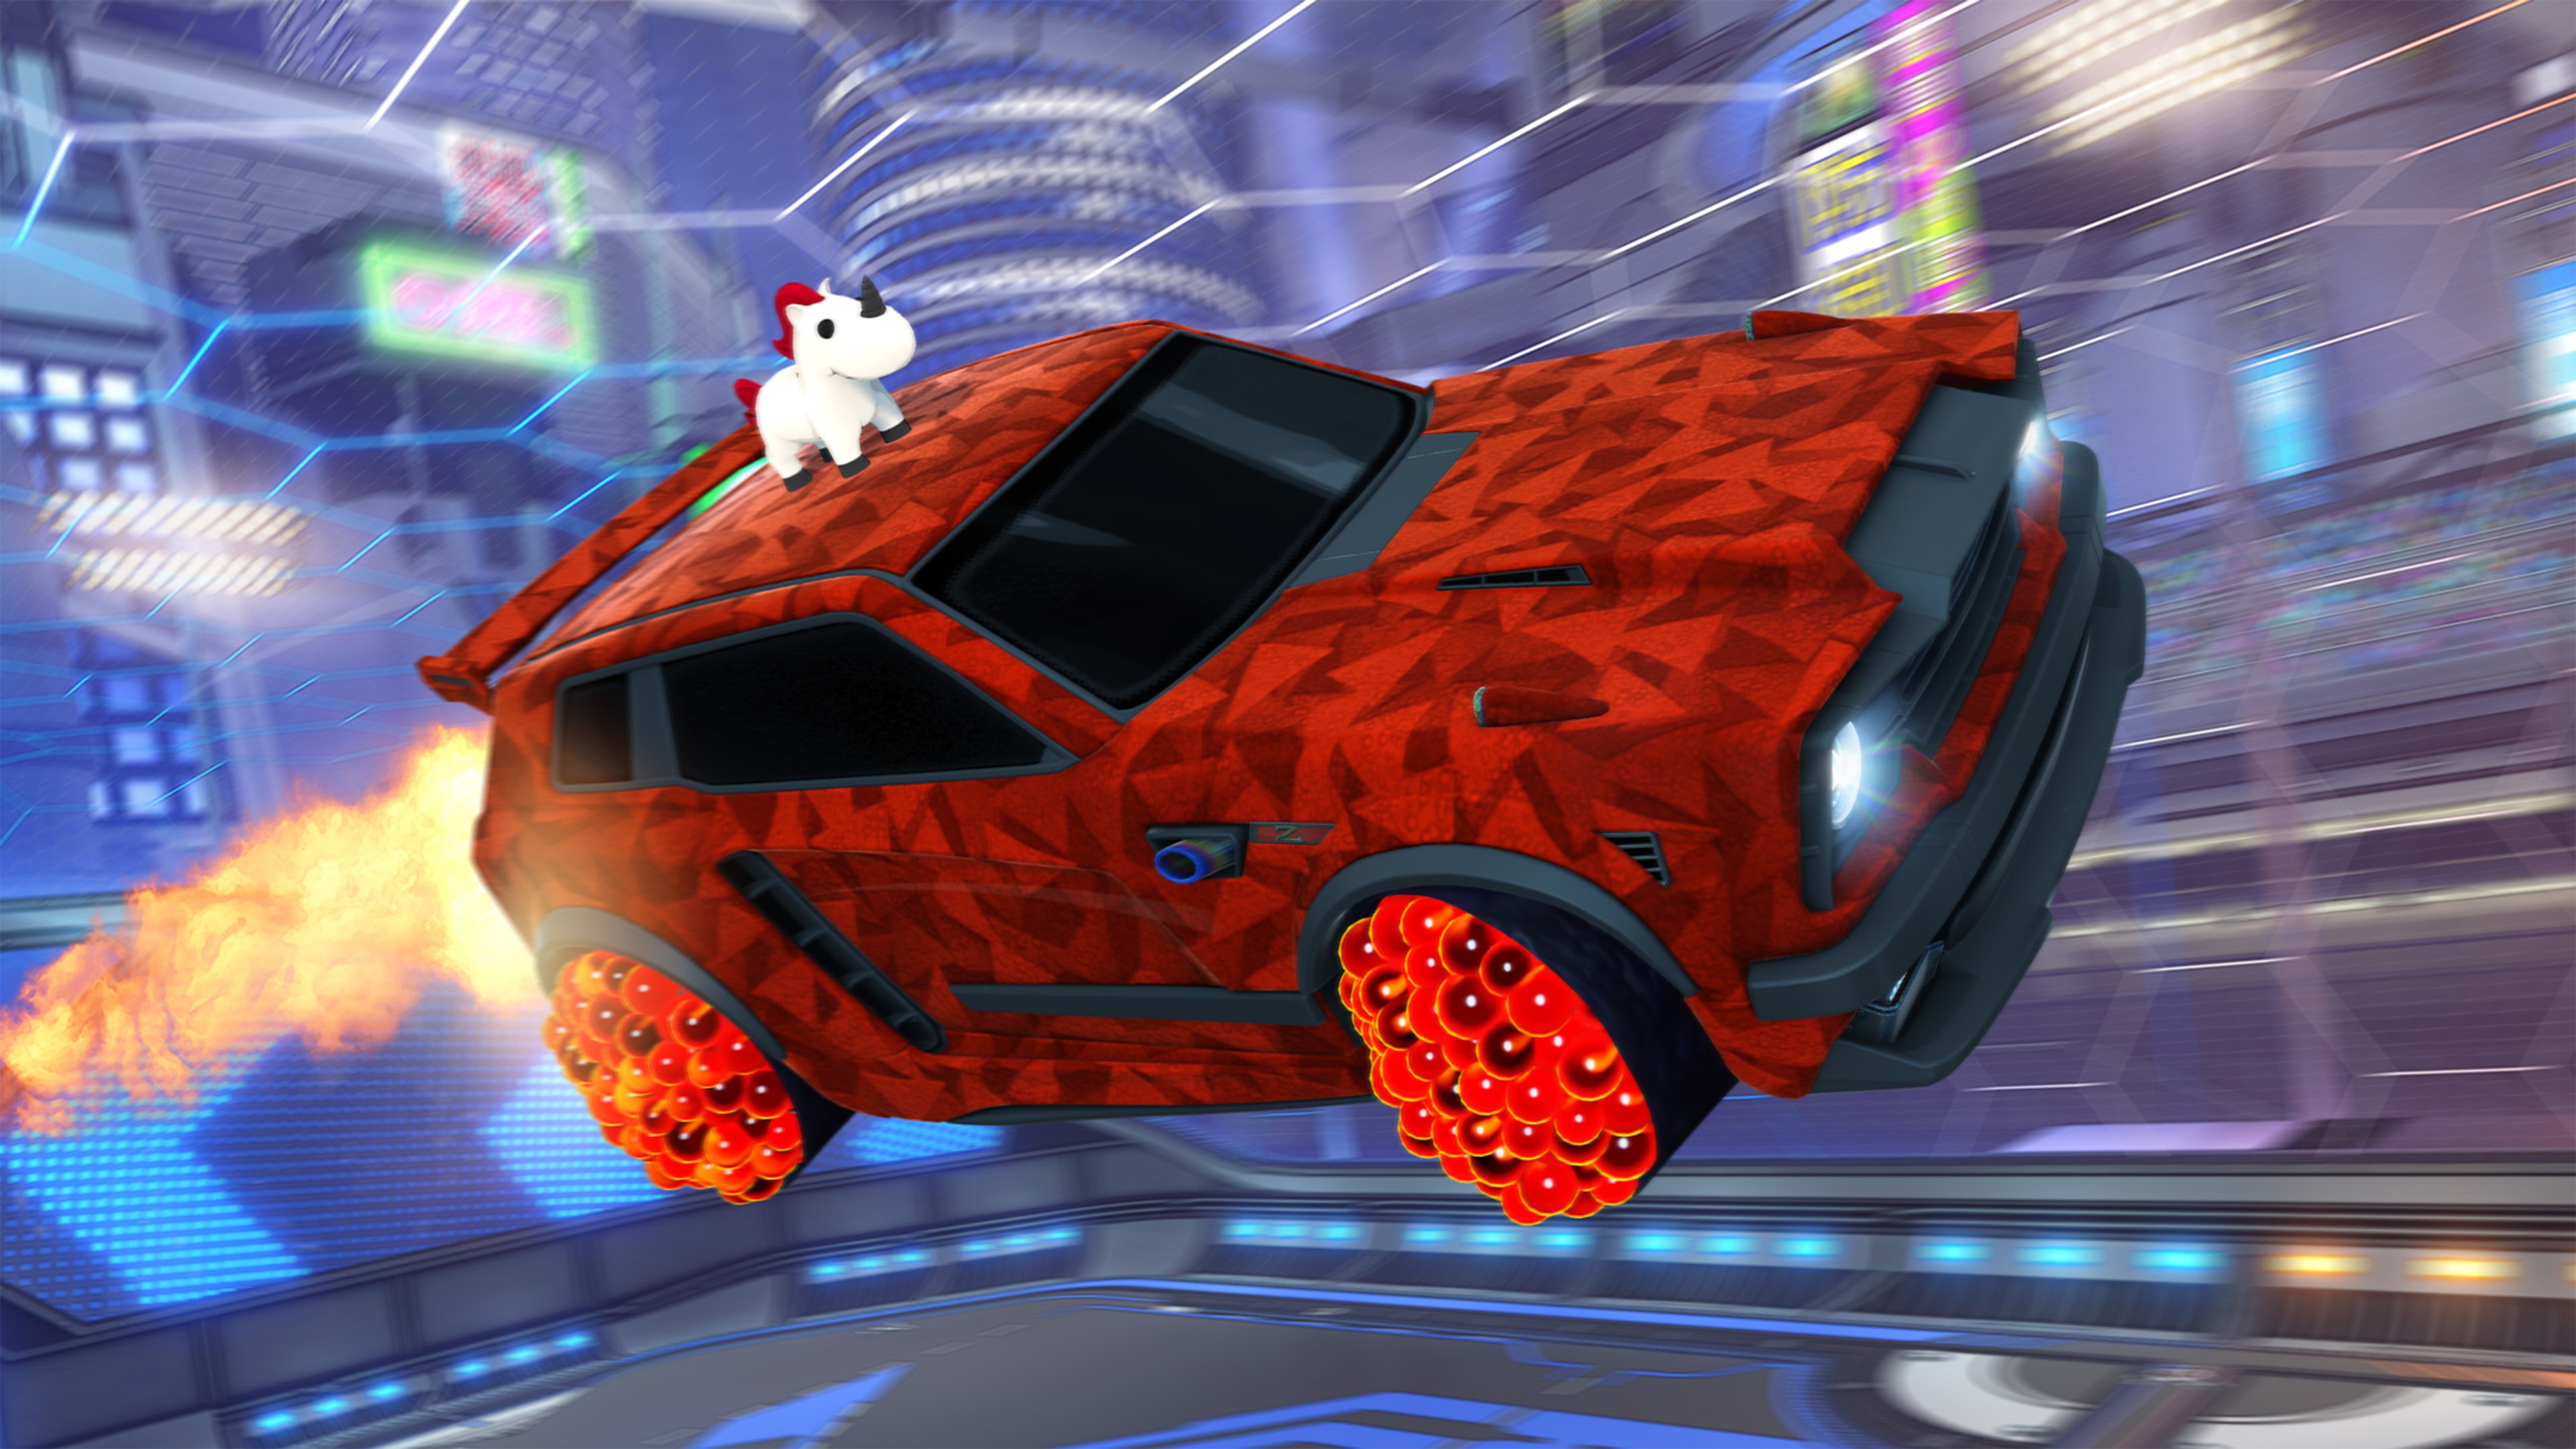 Screenshot von Rocket League, der ein Auto mit einem Einhorn-ähnlichen Tier auf dem Dach und einer roten, geometrischen Lackierung zeigt.